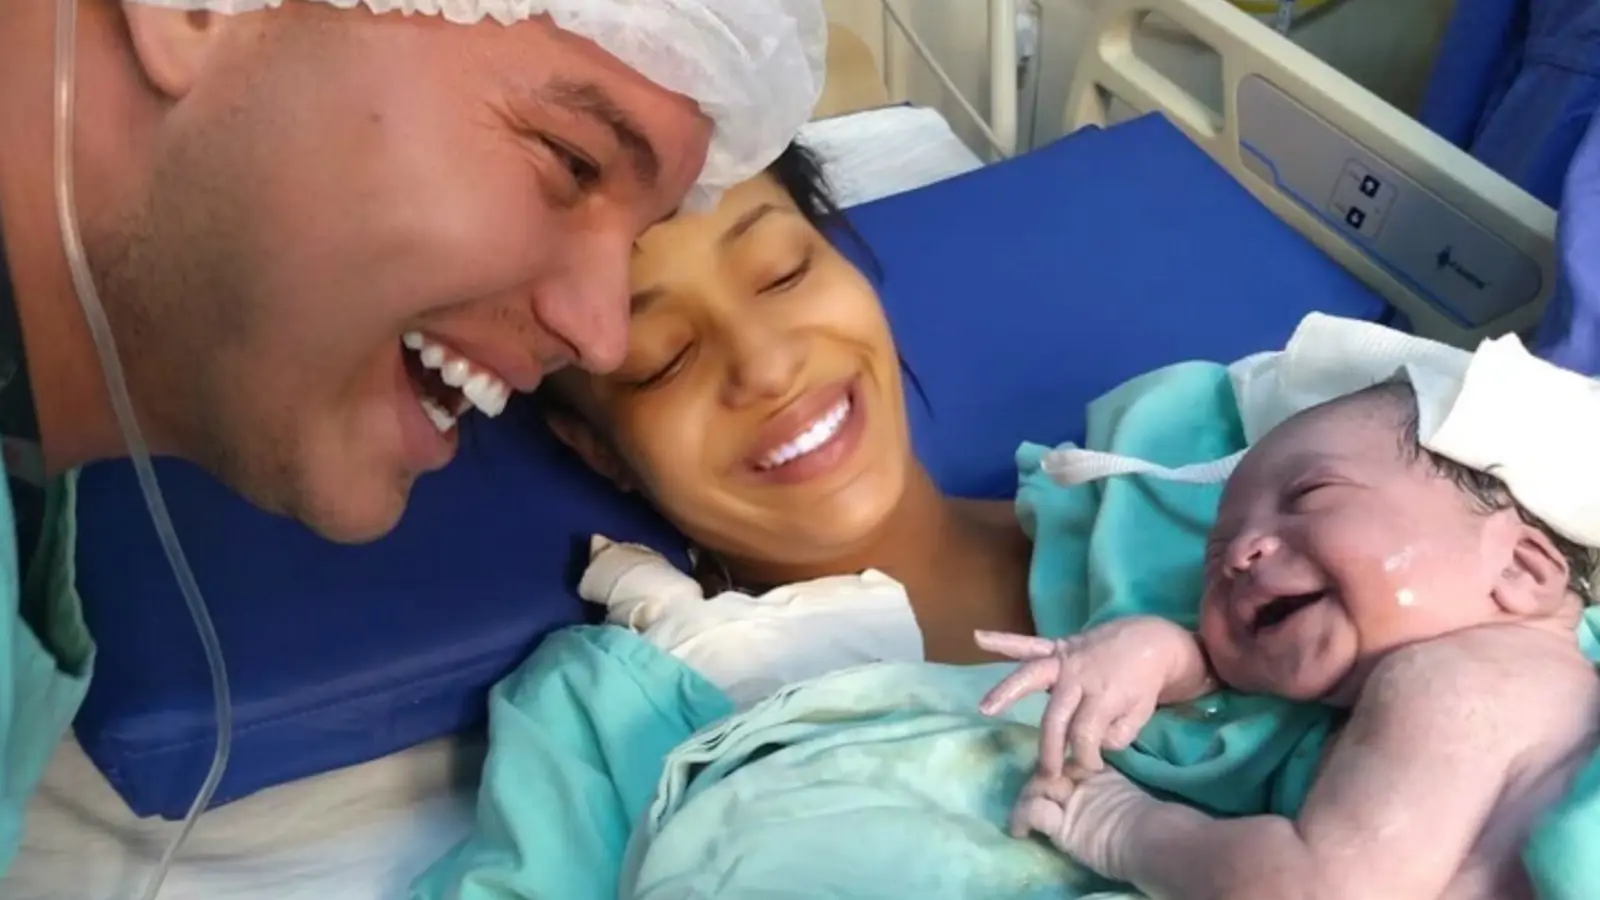 Une photo montrant un nouveau-né qui sourit à ses parents fait le tour du monde